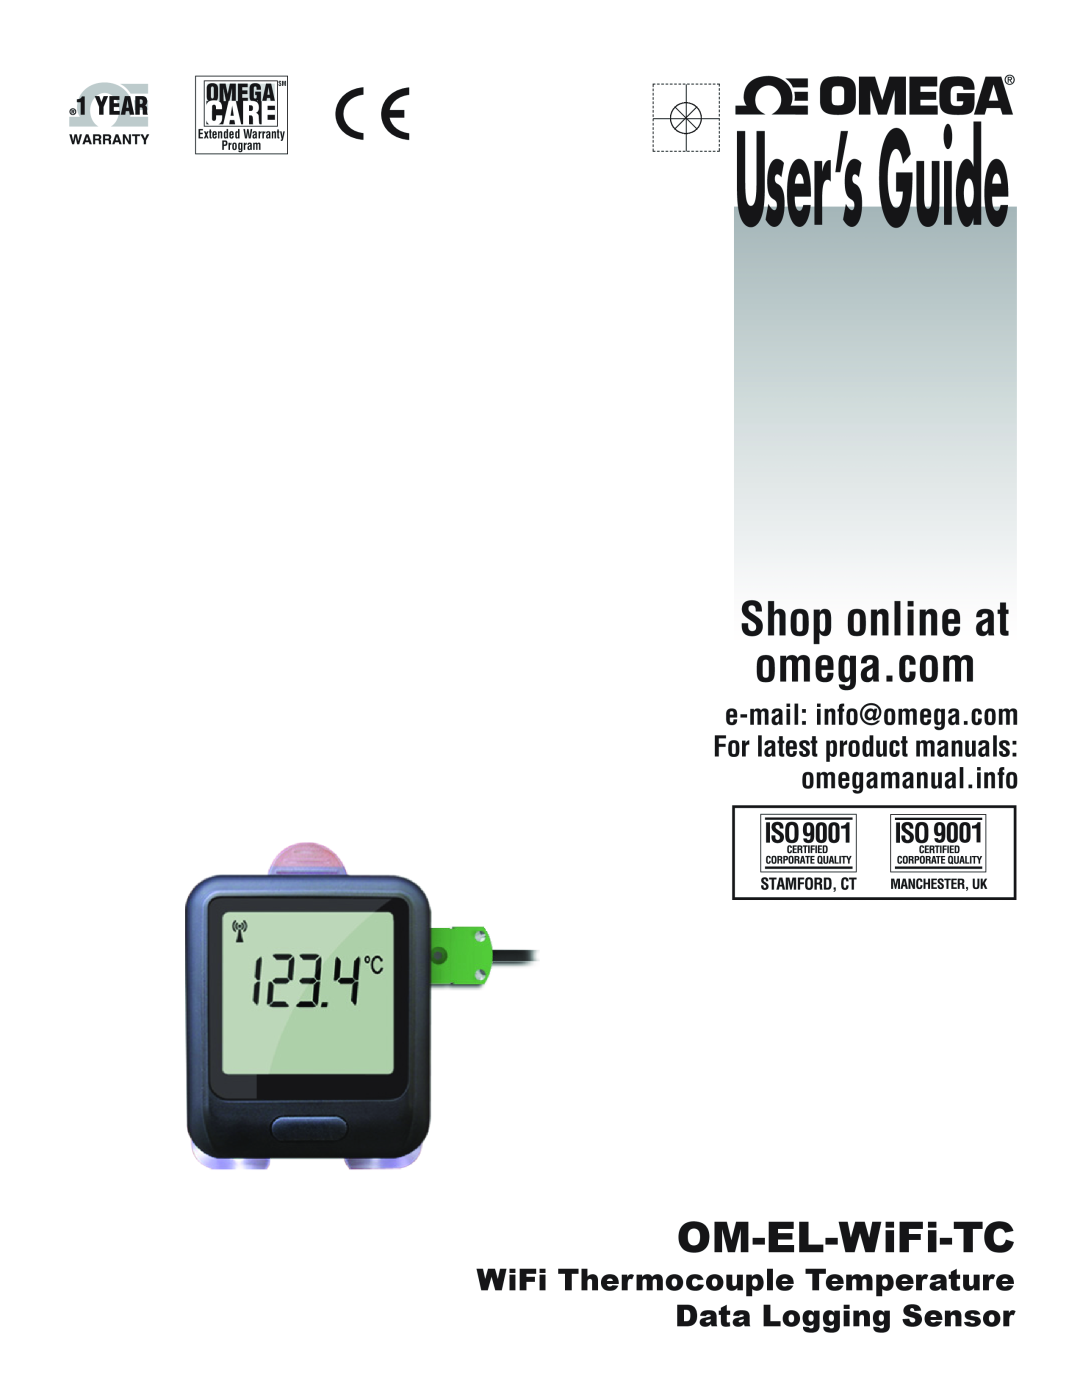 Omega Engineering ISD9001, ISO9001 warranty OM-EL-WiFi-TH, User’sGuide, OM-EL-WiFi-TC, Extended Warranty, Program 